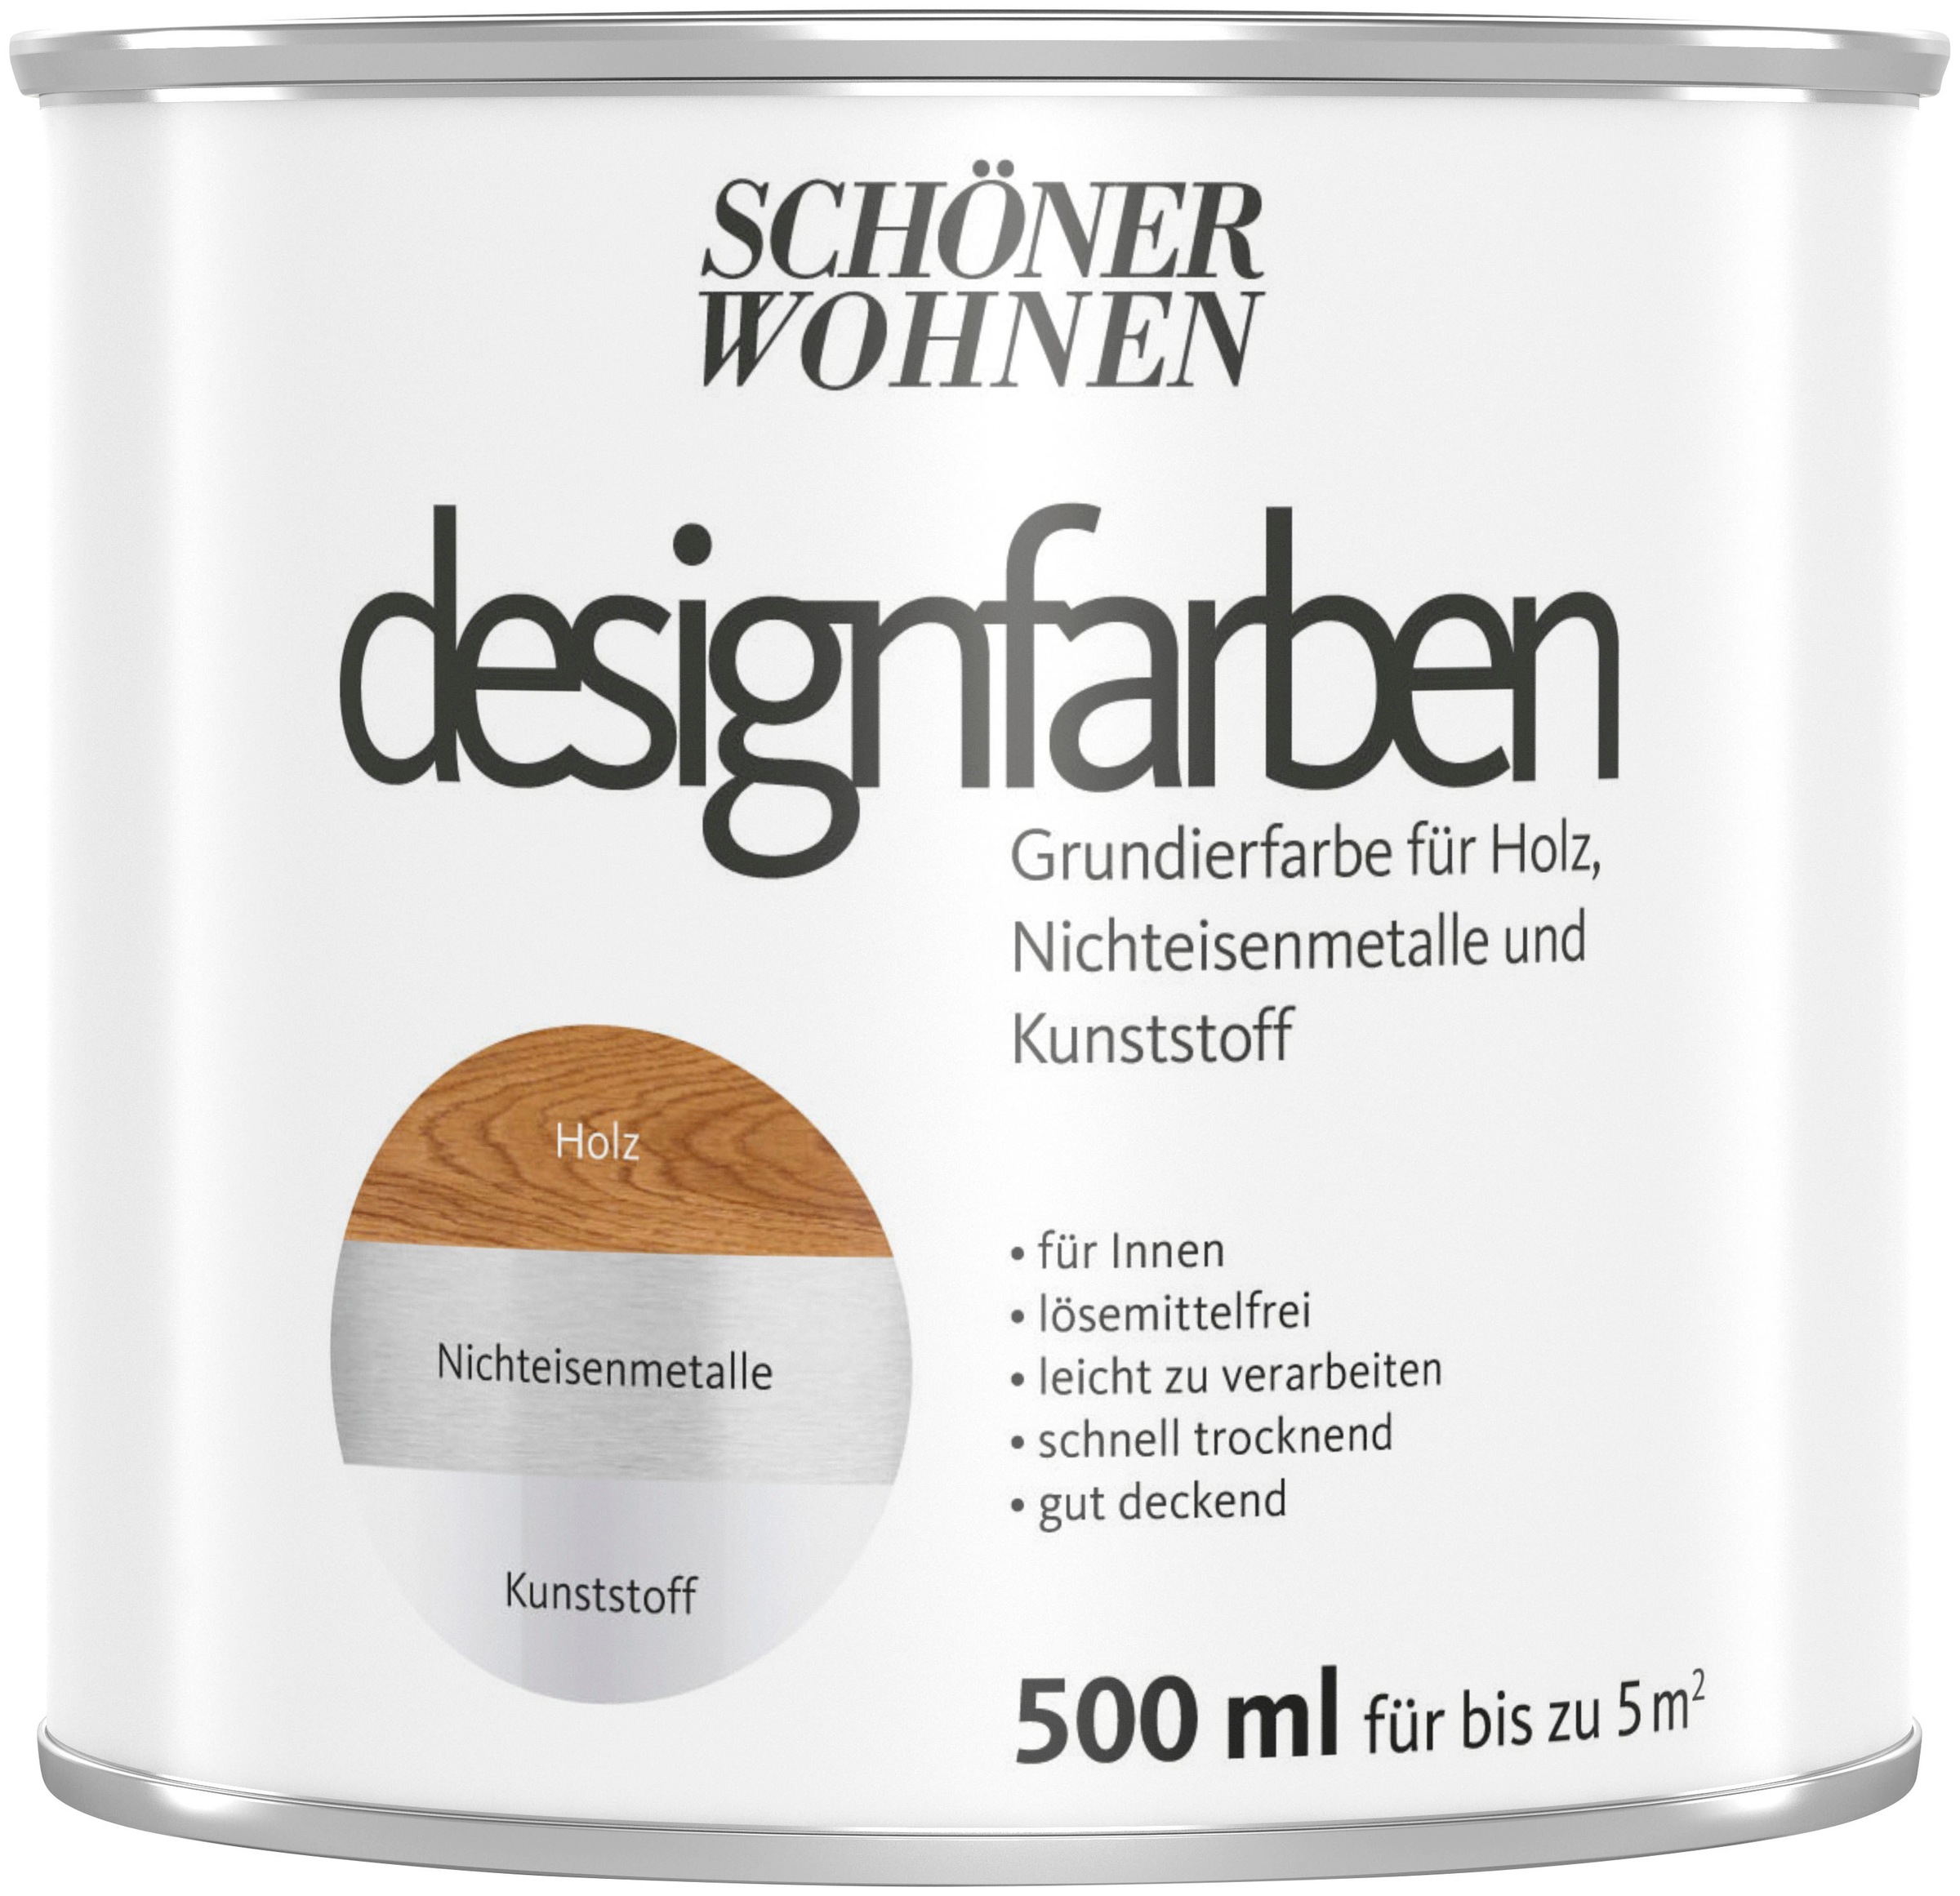 SCHÖNER WOHNEN FARBE Grundierfarbe "designfarben", 500 ml, weiß, für SW Designfarbe - Holz, Kunststoff, Nichteisenmetall